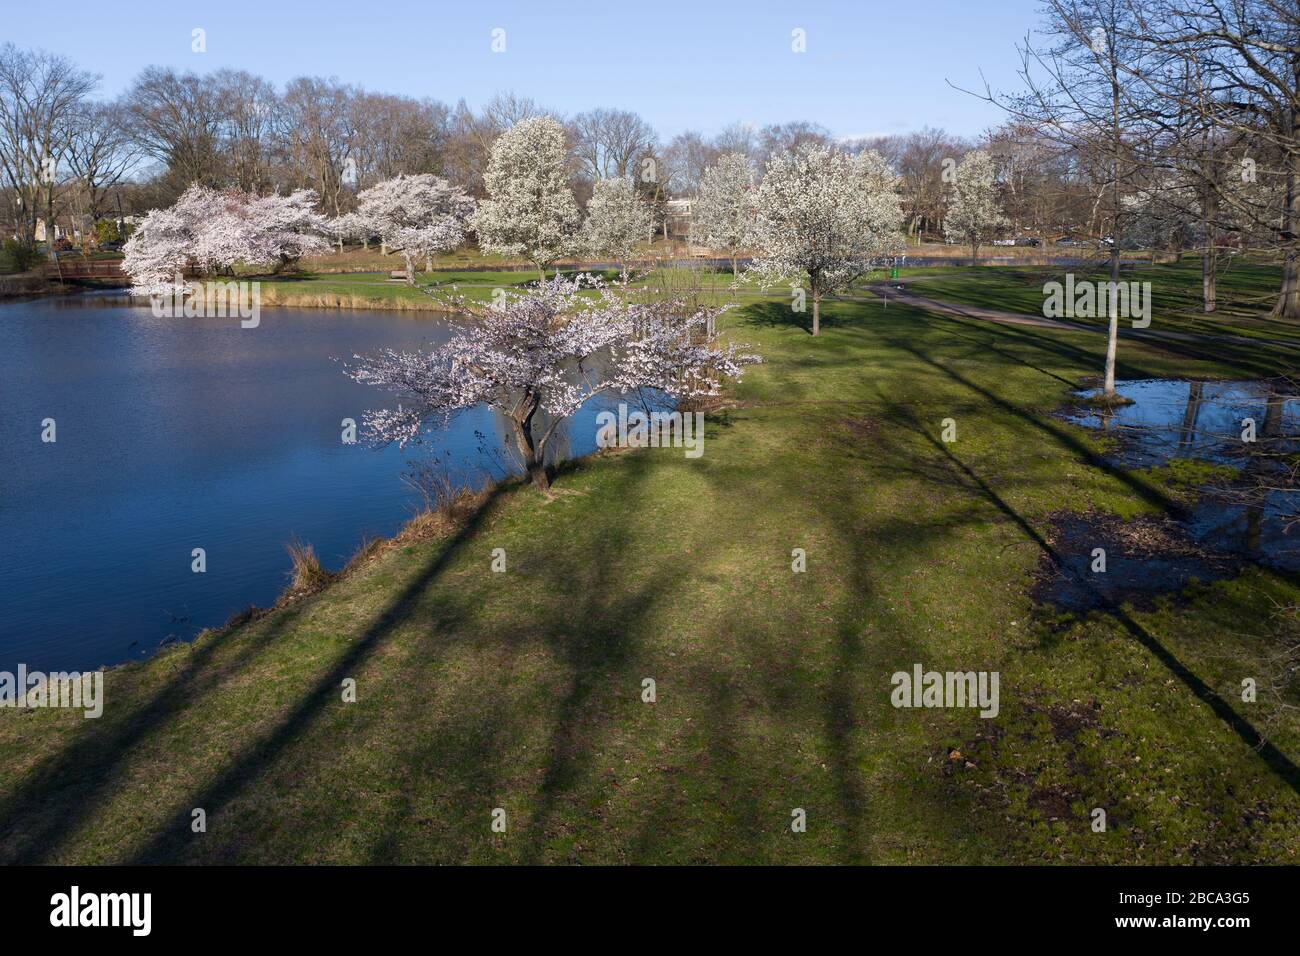 Vista aerea di lunghe ombre da alti alberi su erba verde lungo un lago con alberi di ciliegio rosa sullo sfondo. Foto Stock